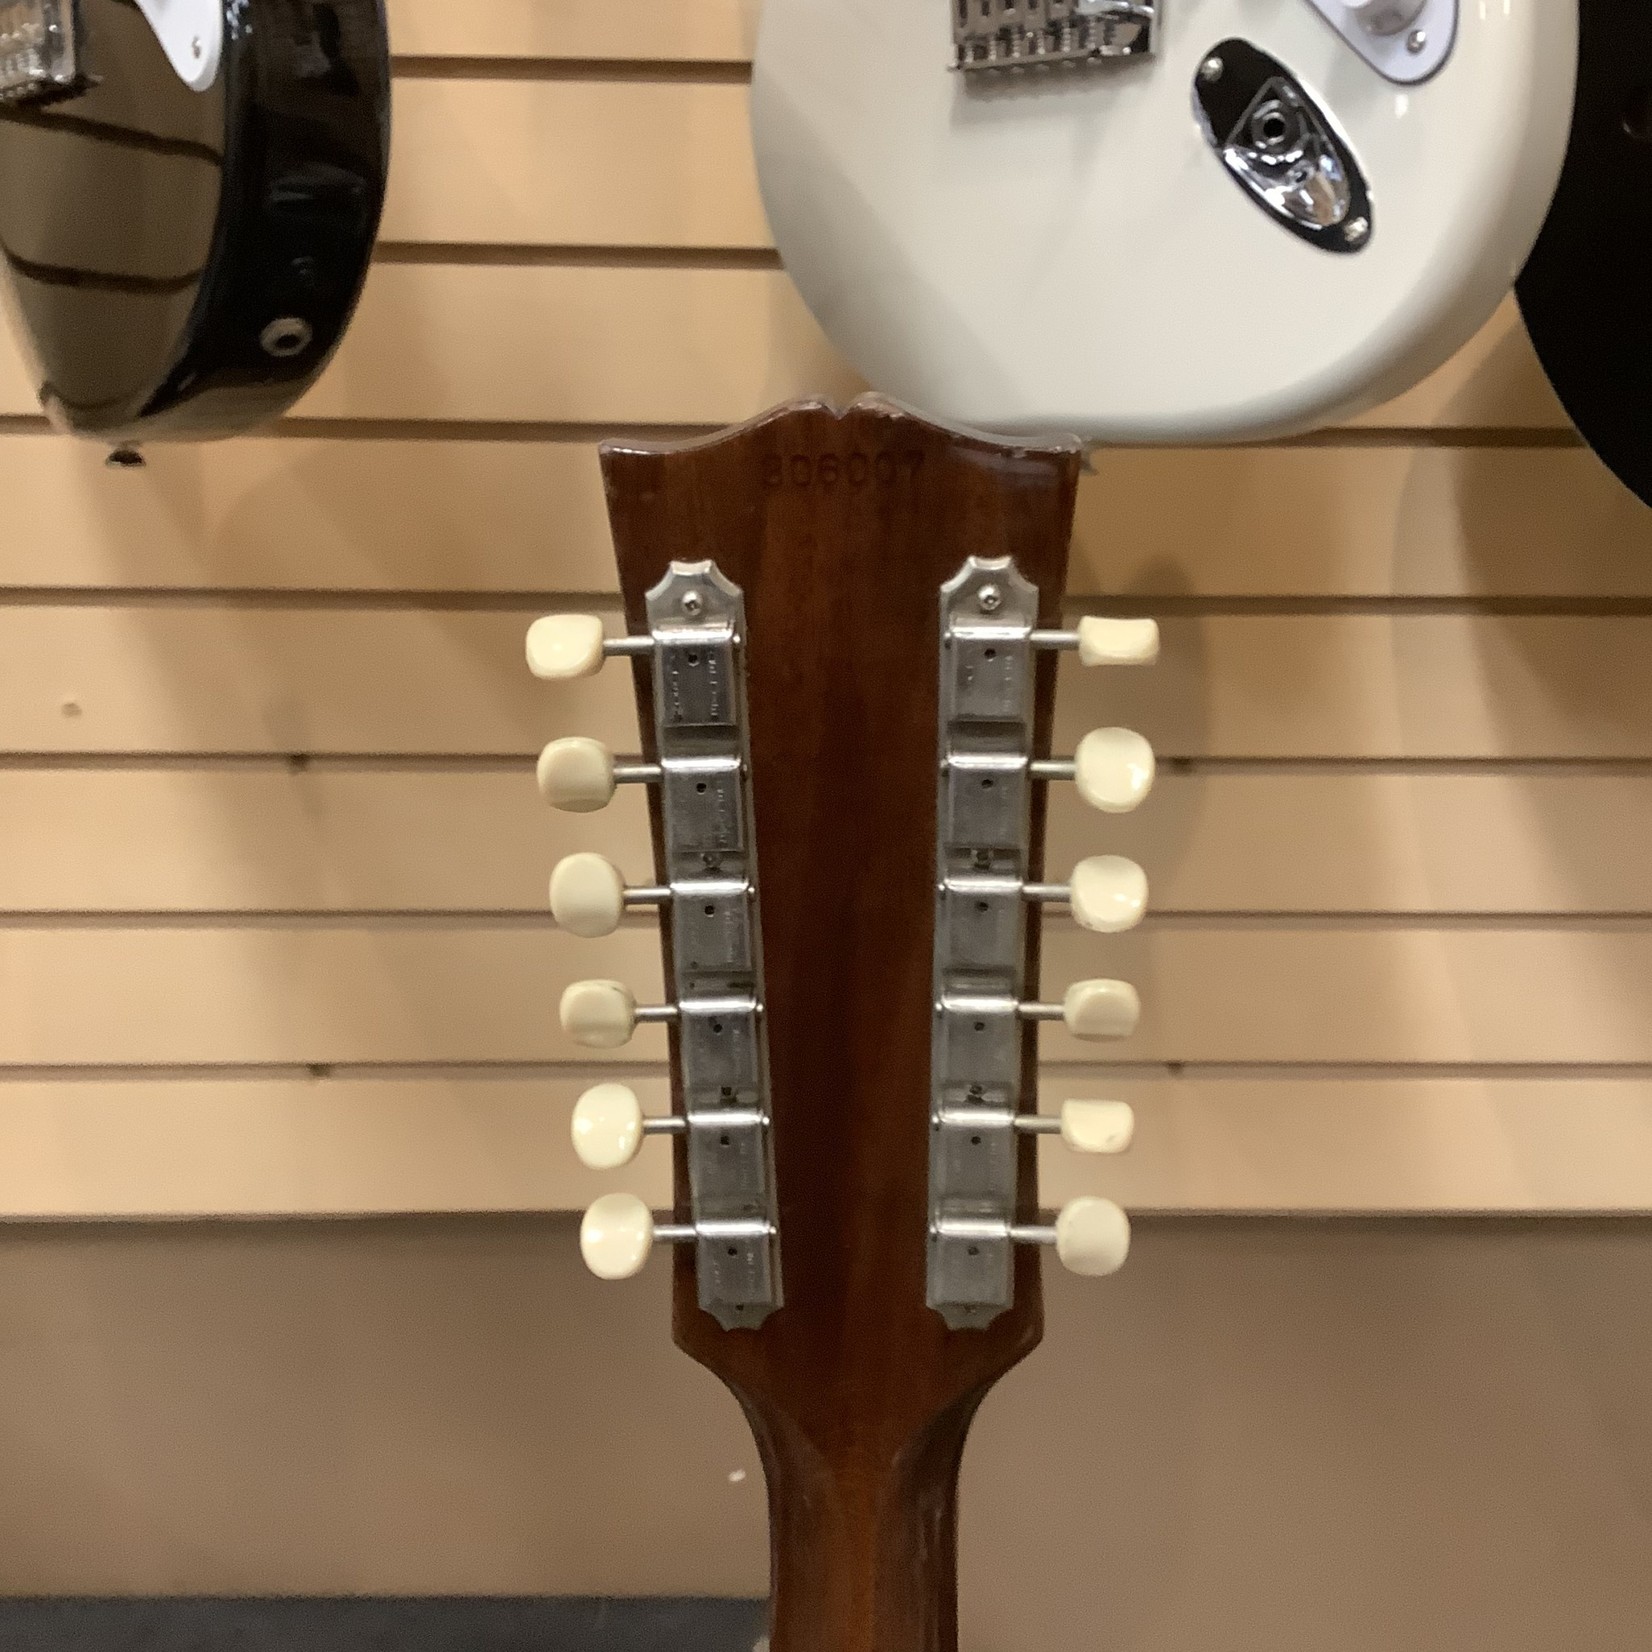 Gibson 1967 Gibson ES-335 12-String Sunburst